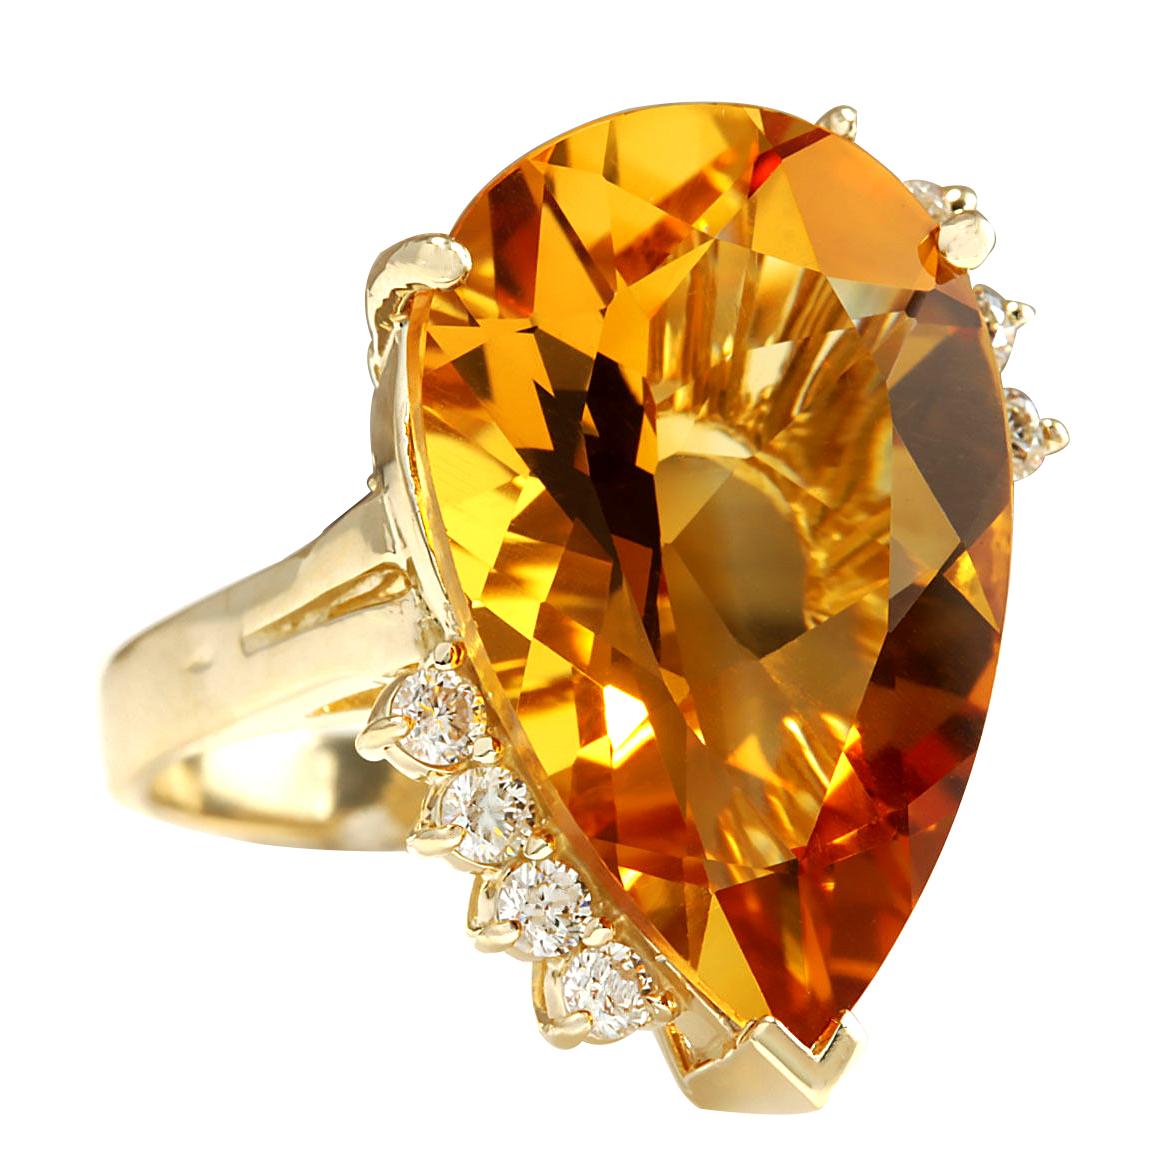 14.31 Carat Natural Citrine 14 Karat Yellow Gold Diamond Ring
Stamped: 14K Yellow Gold
Total Ring Weight: 6.5 Grams
Total Natural Citrine Weight is 13.41 Carat (Measures: 23.00x14.00 mm)
Color: Yellow
Total Natural Diamond Weight is 0.90